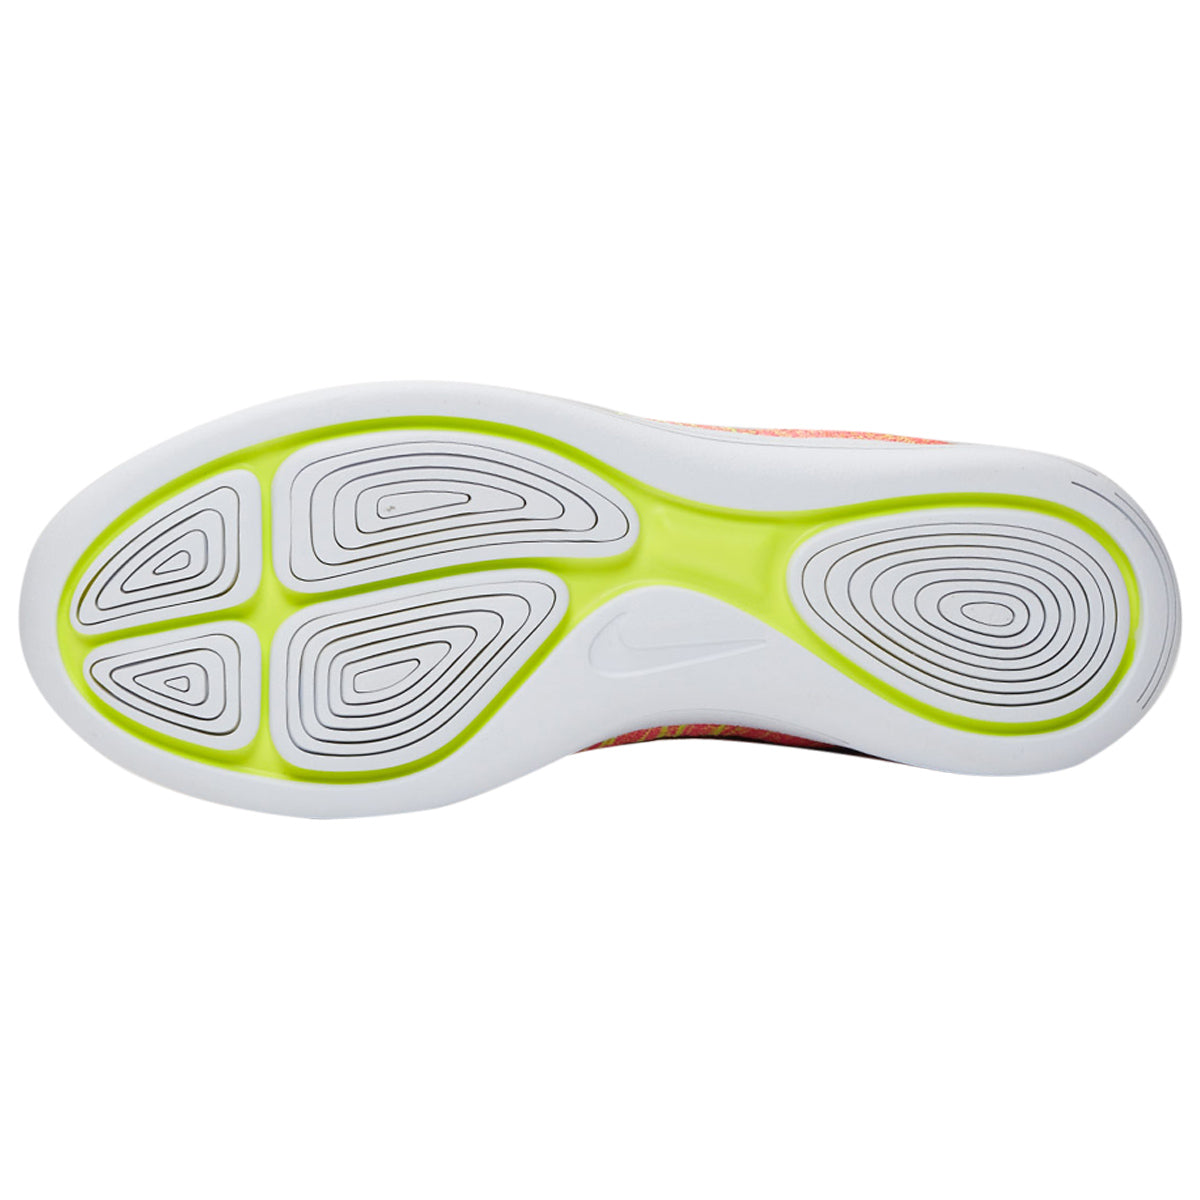 Nike Lunarepic Low Flyknit Oc Womens Style : 844863-999